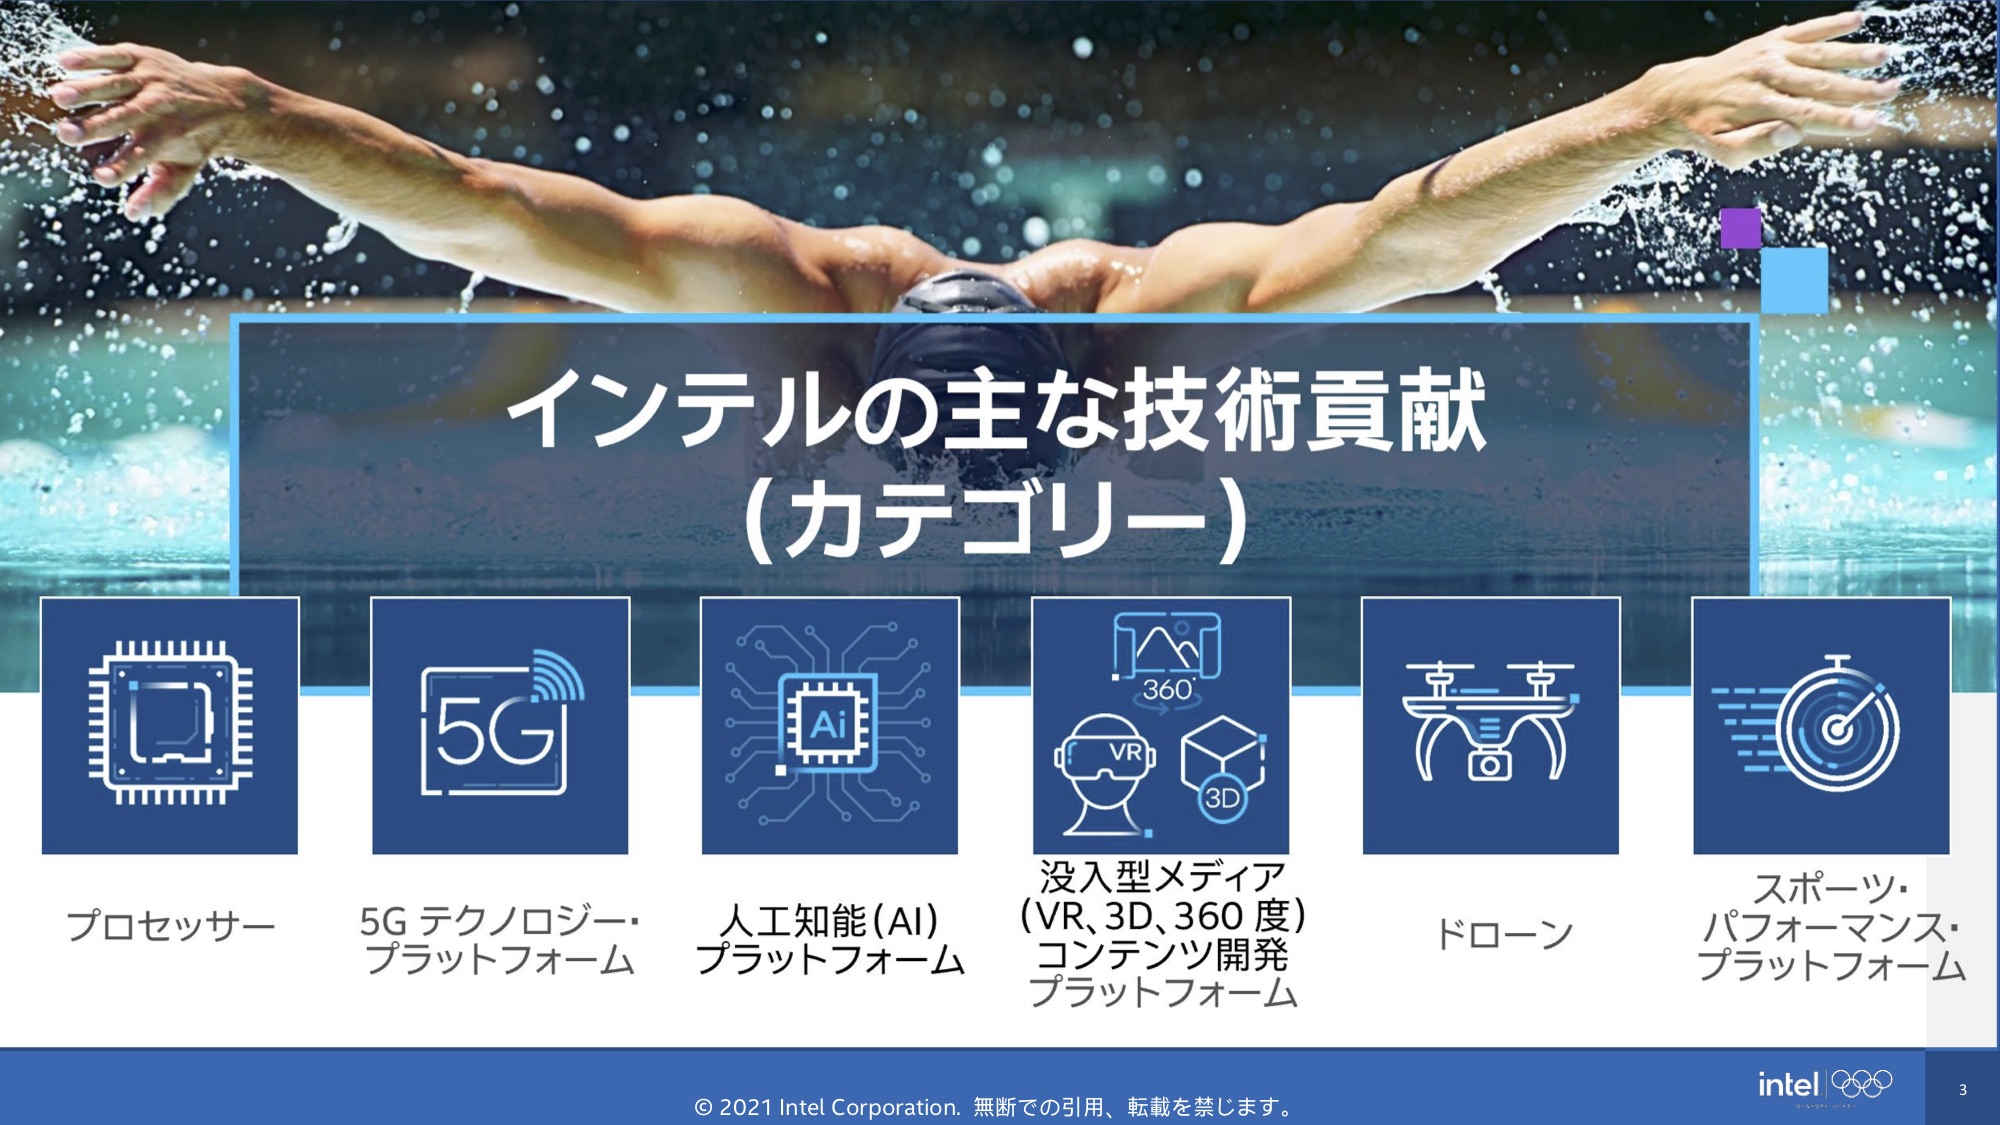 東京オリンピックに採用された Intel インテル の最新技術によるスポーツ観戦への取り組み